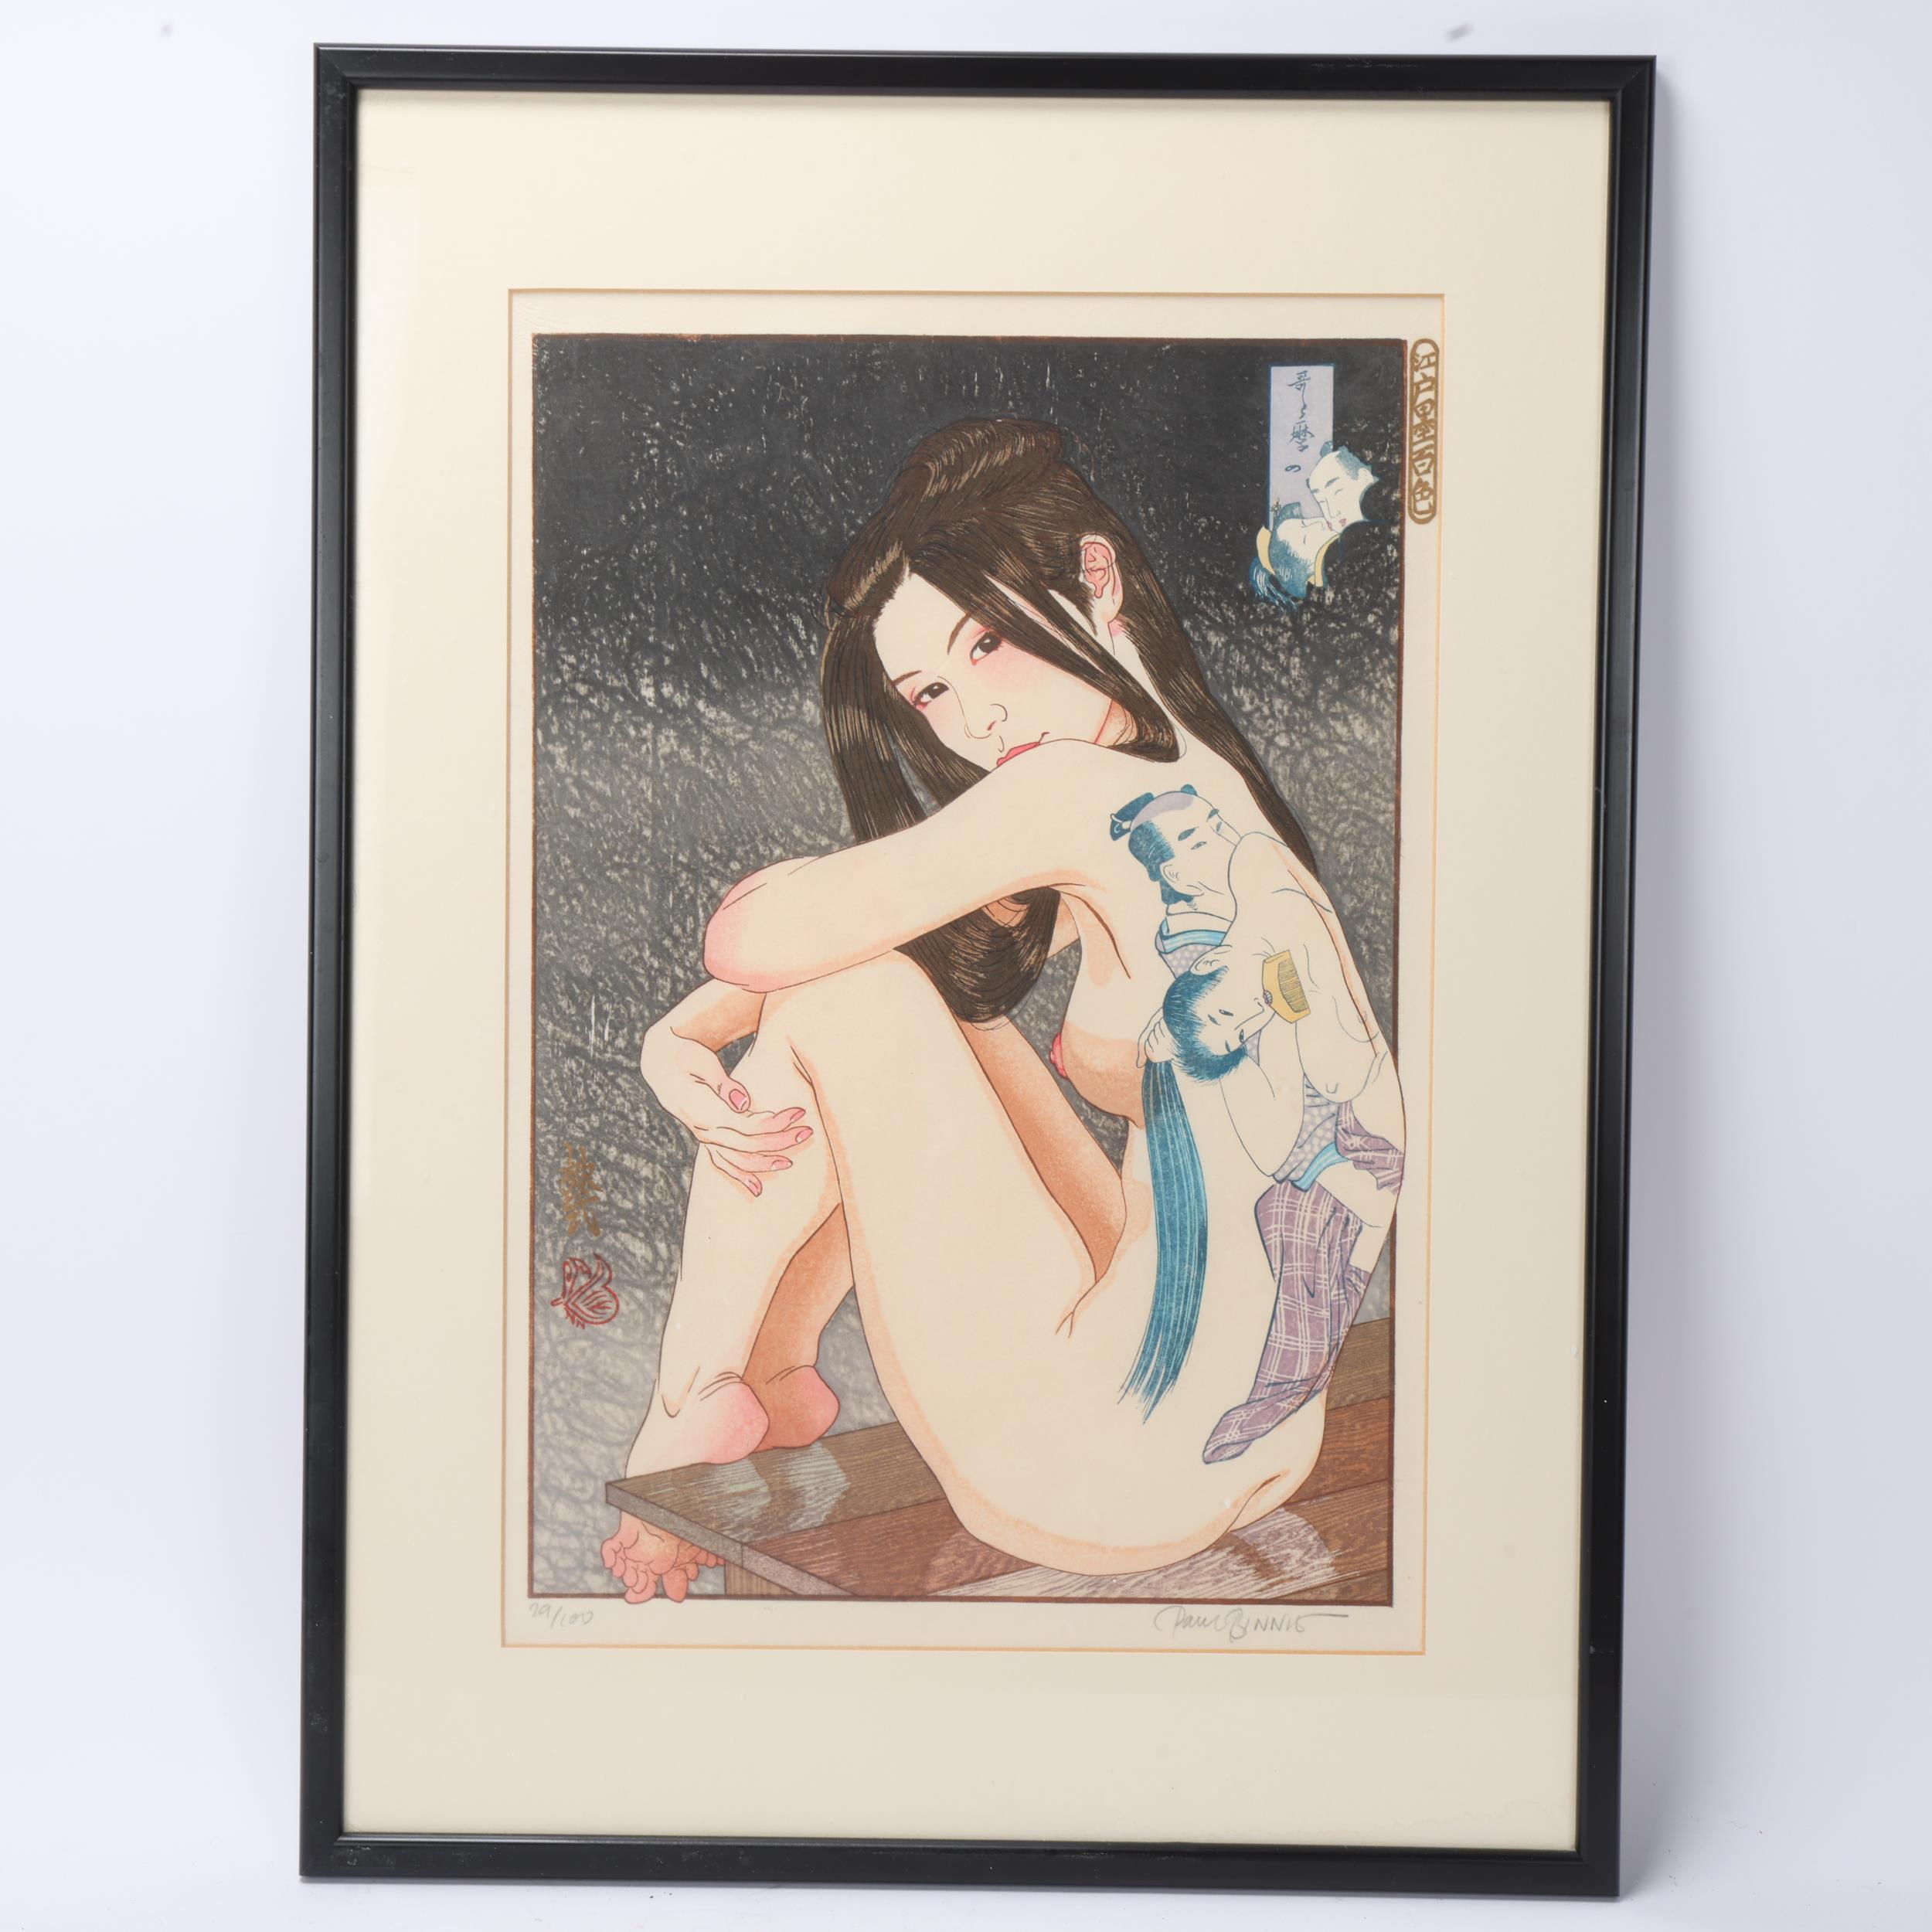 Paul Binnie (born 1967), Utamarono Shunga - Erotica by Utamaro, hand colour woodblock print from - Image 2 of 3